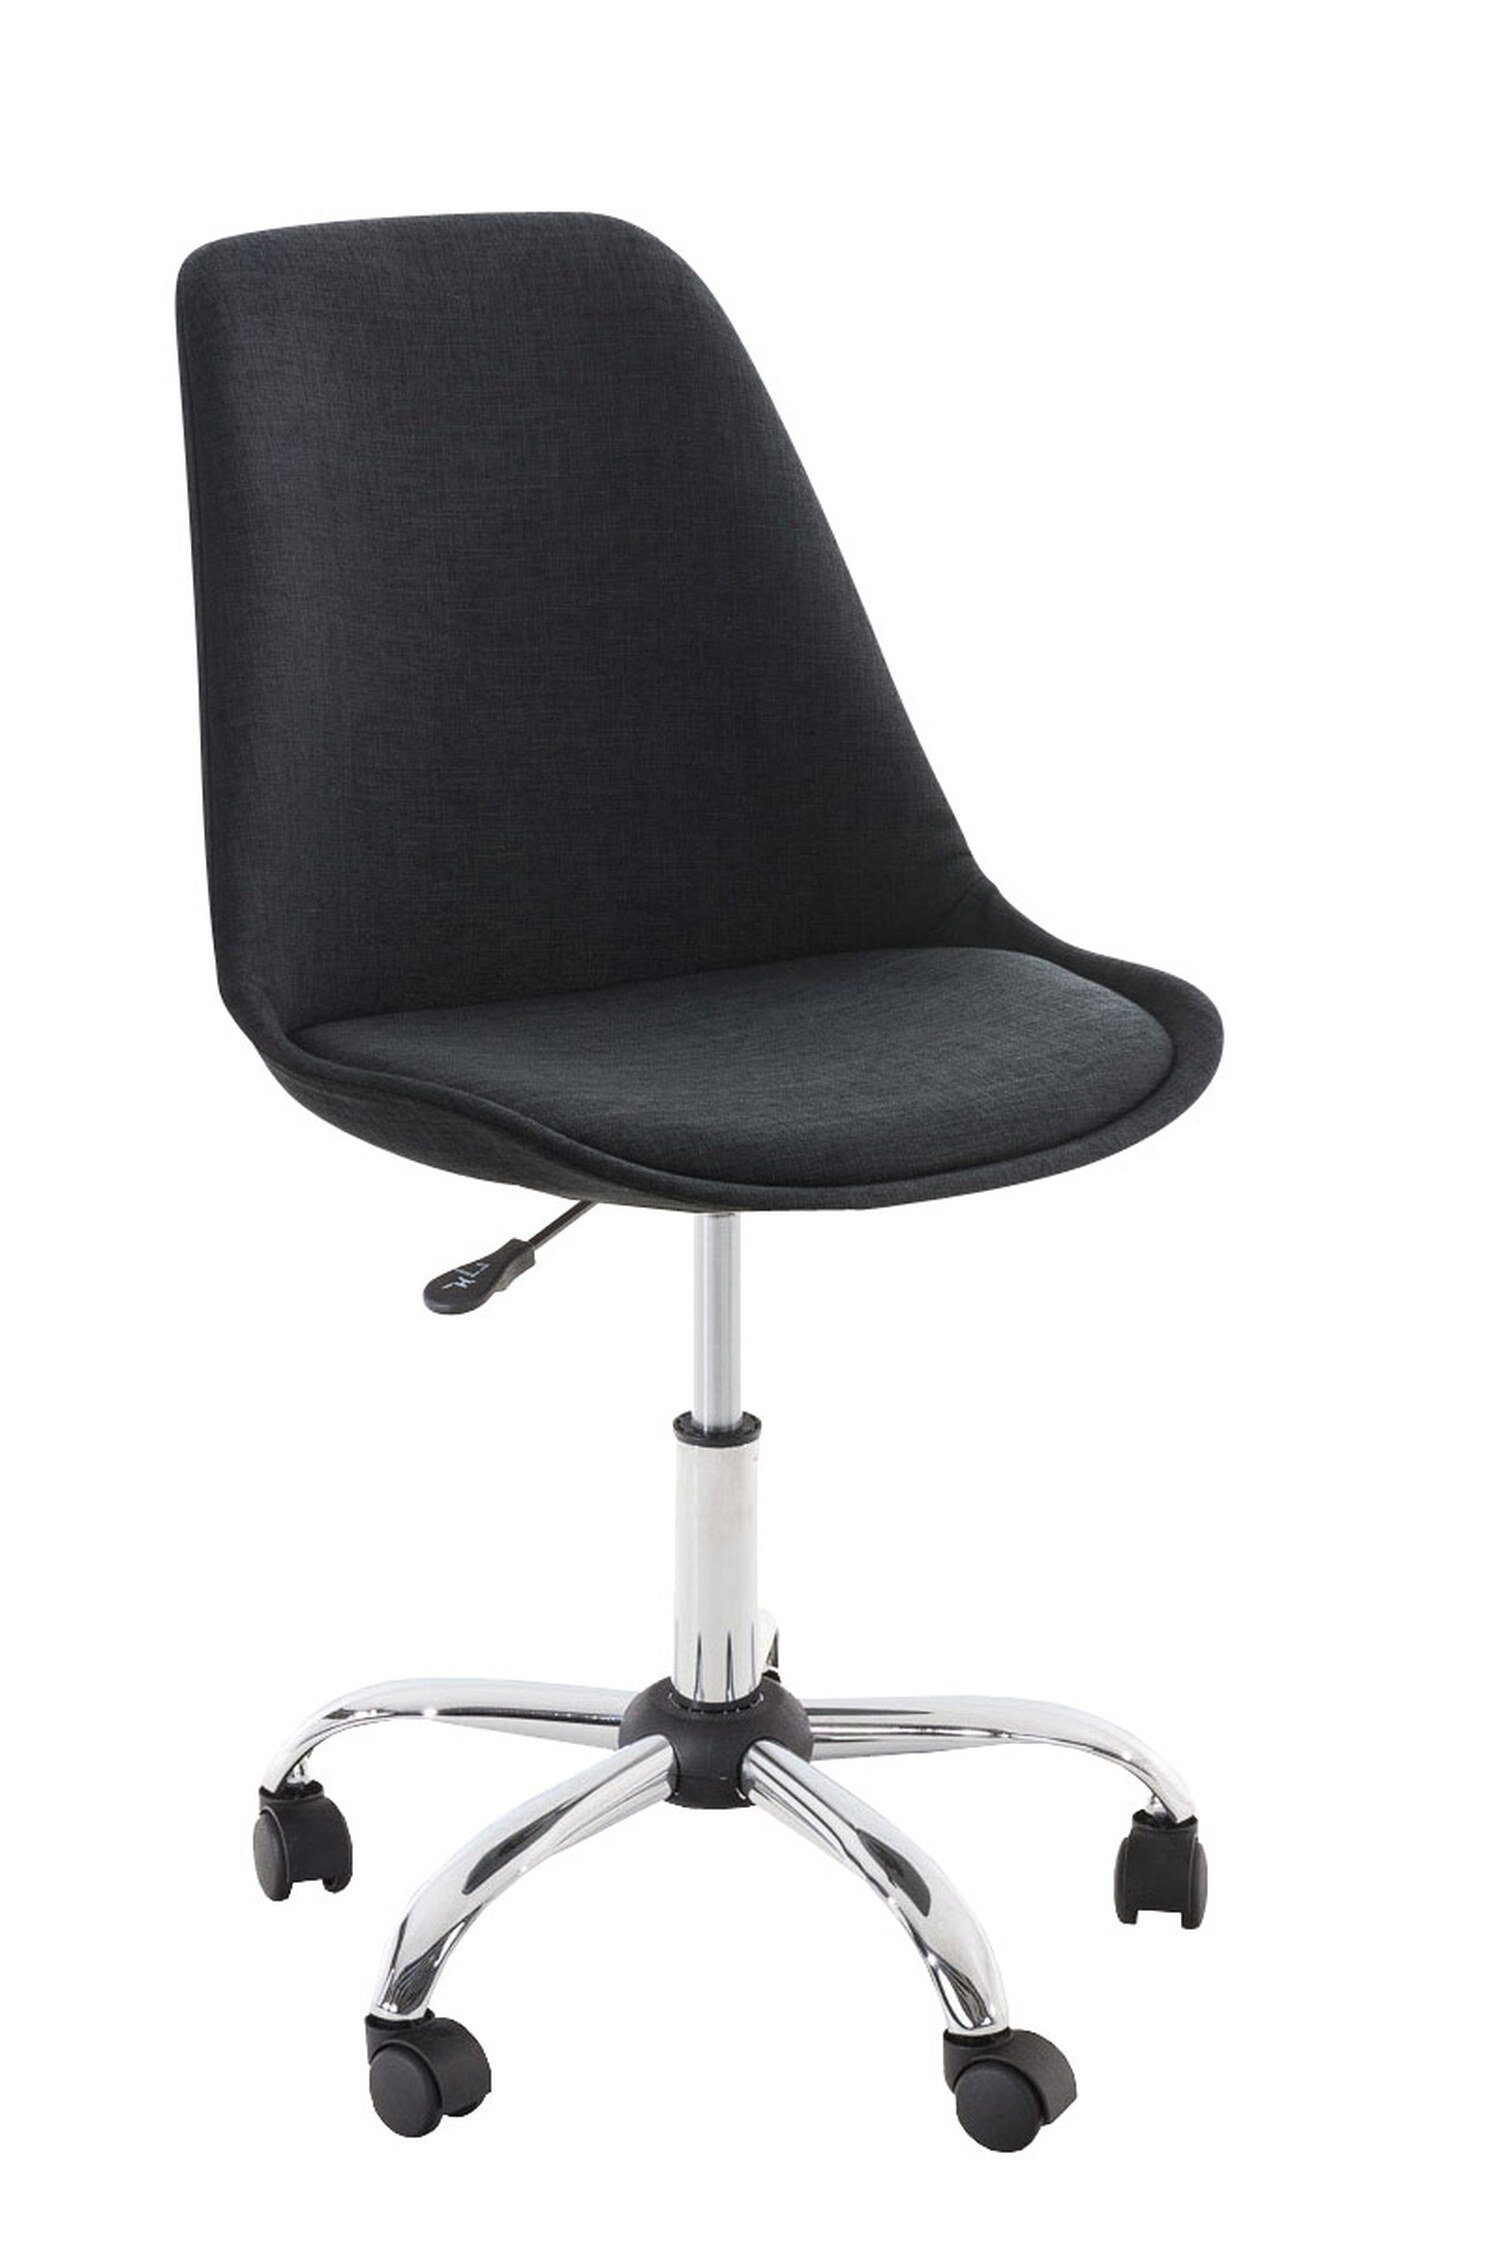 TPFLiving Bürostuhl Pegasus mit bequemer Rückenlehne (Schreibtischstuhl, Drehstuhl, Konferenzstuhl, Chefsessel), Gestell: Metall chrom - Sitzfläche: Stoff schwarz | Drehstühle